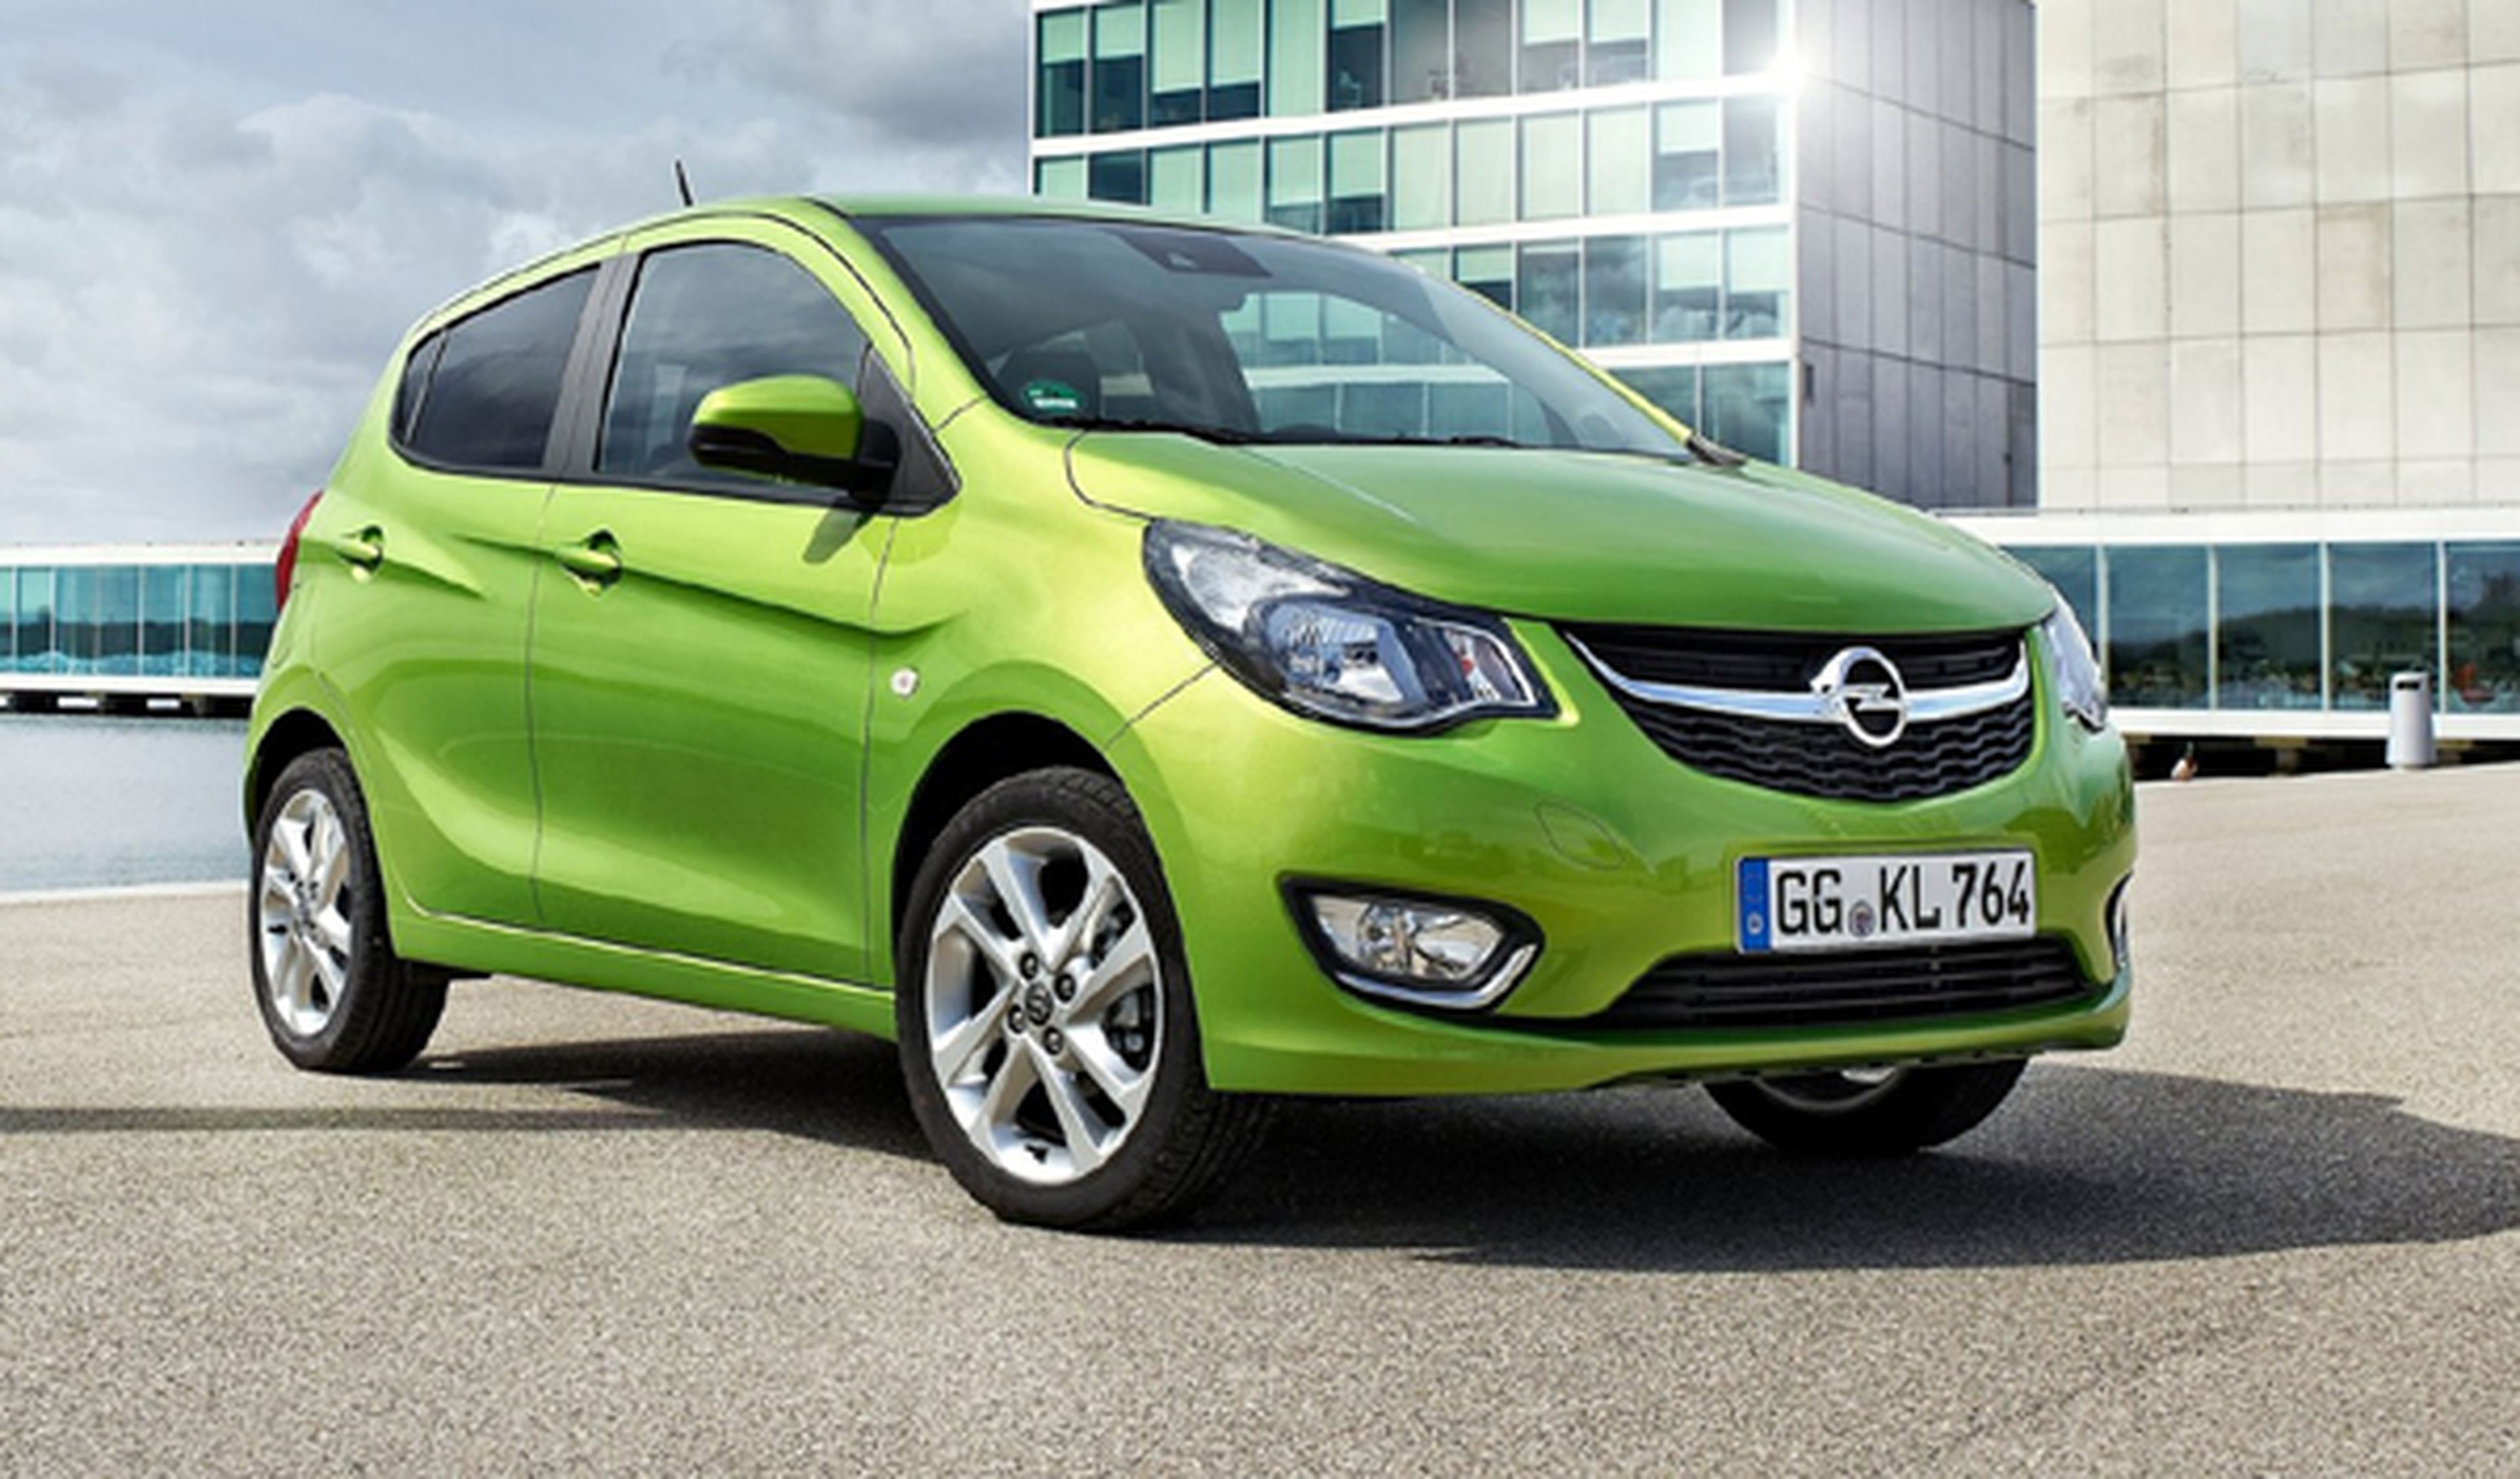 coches nuevos de entre 6.000 y 9.000 euros Opel Karl